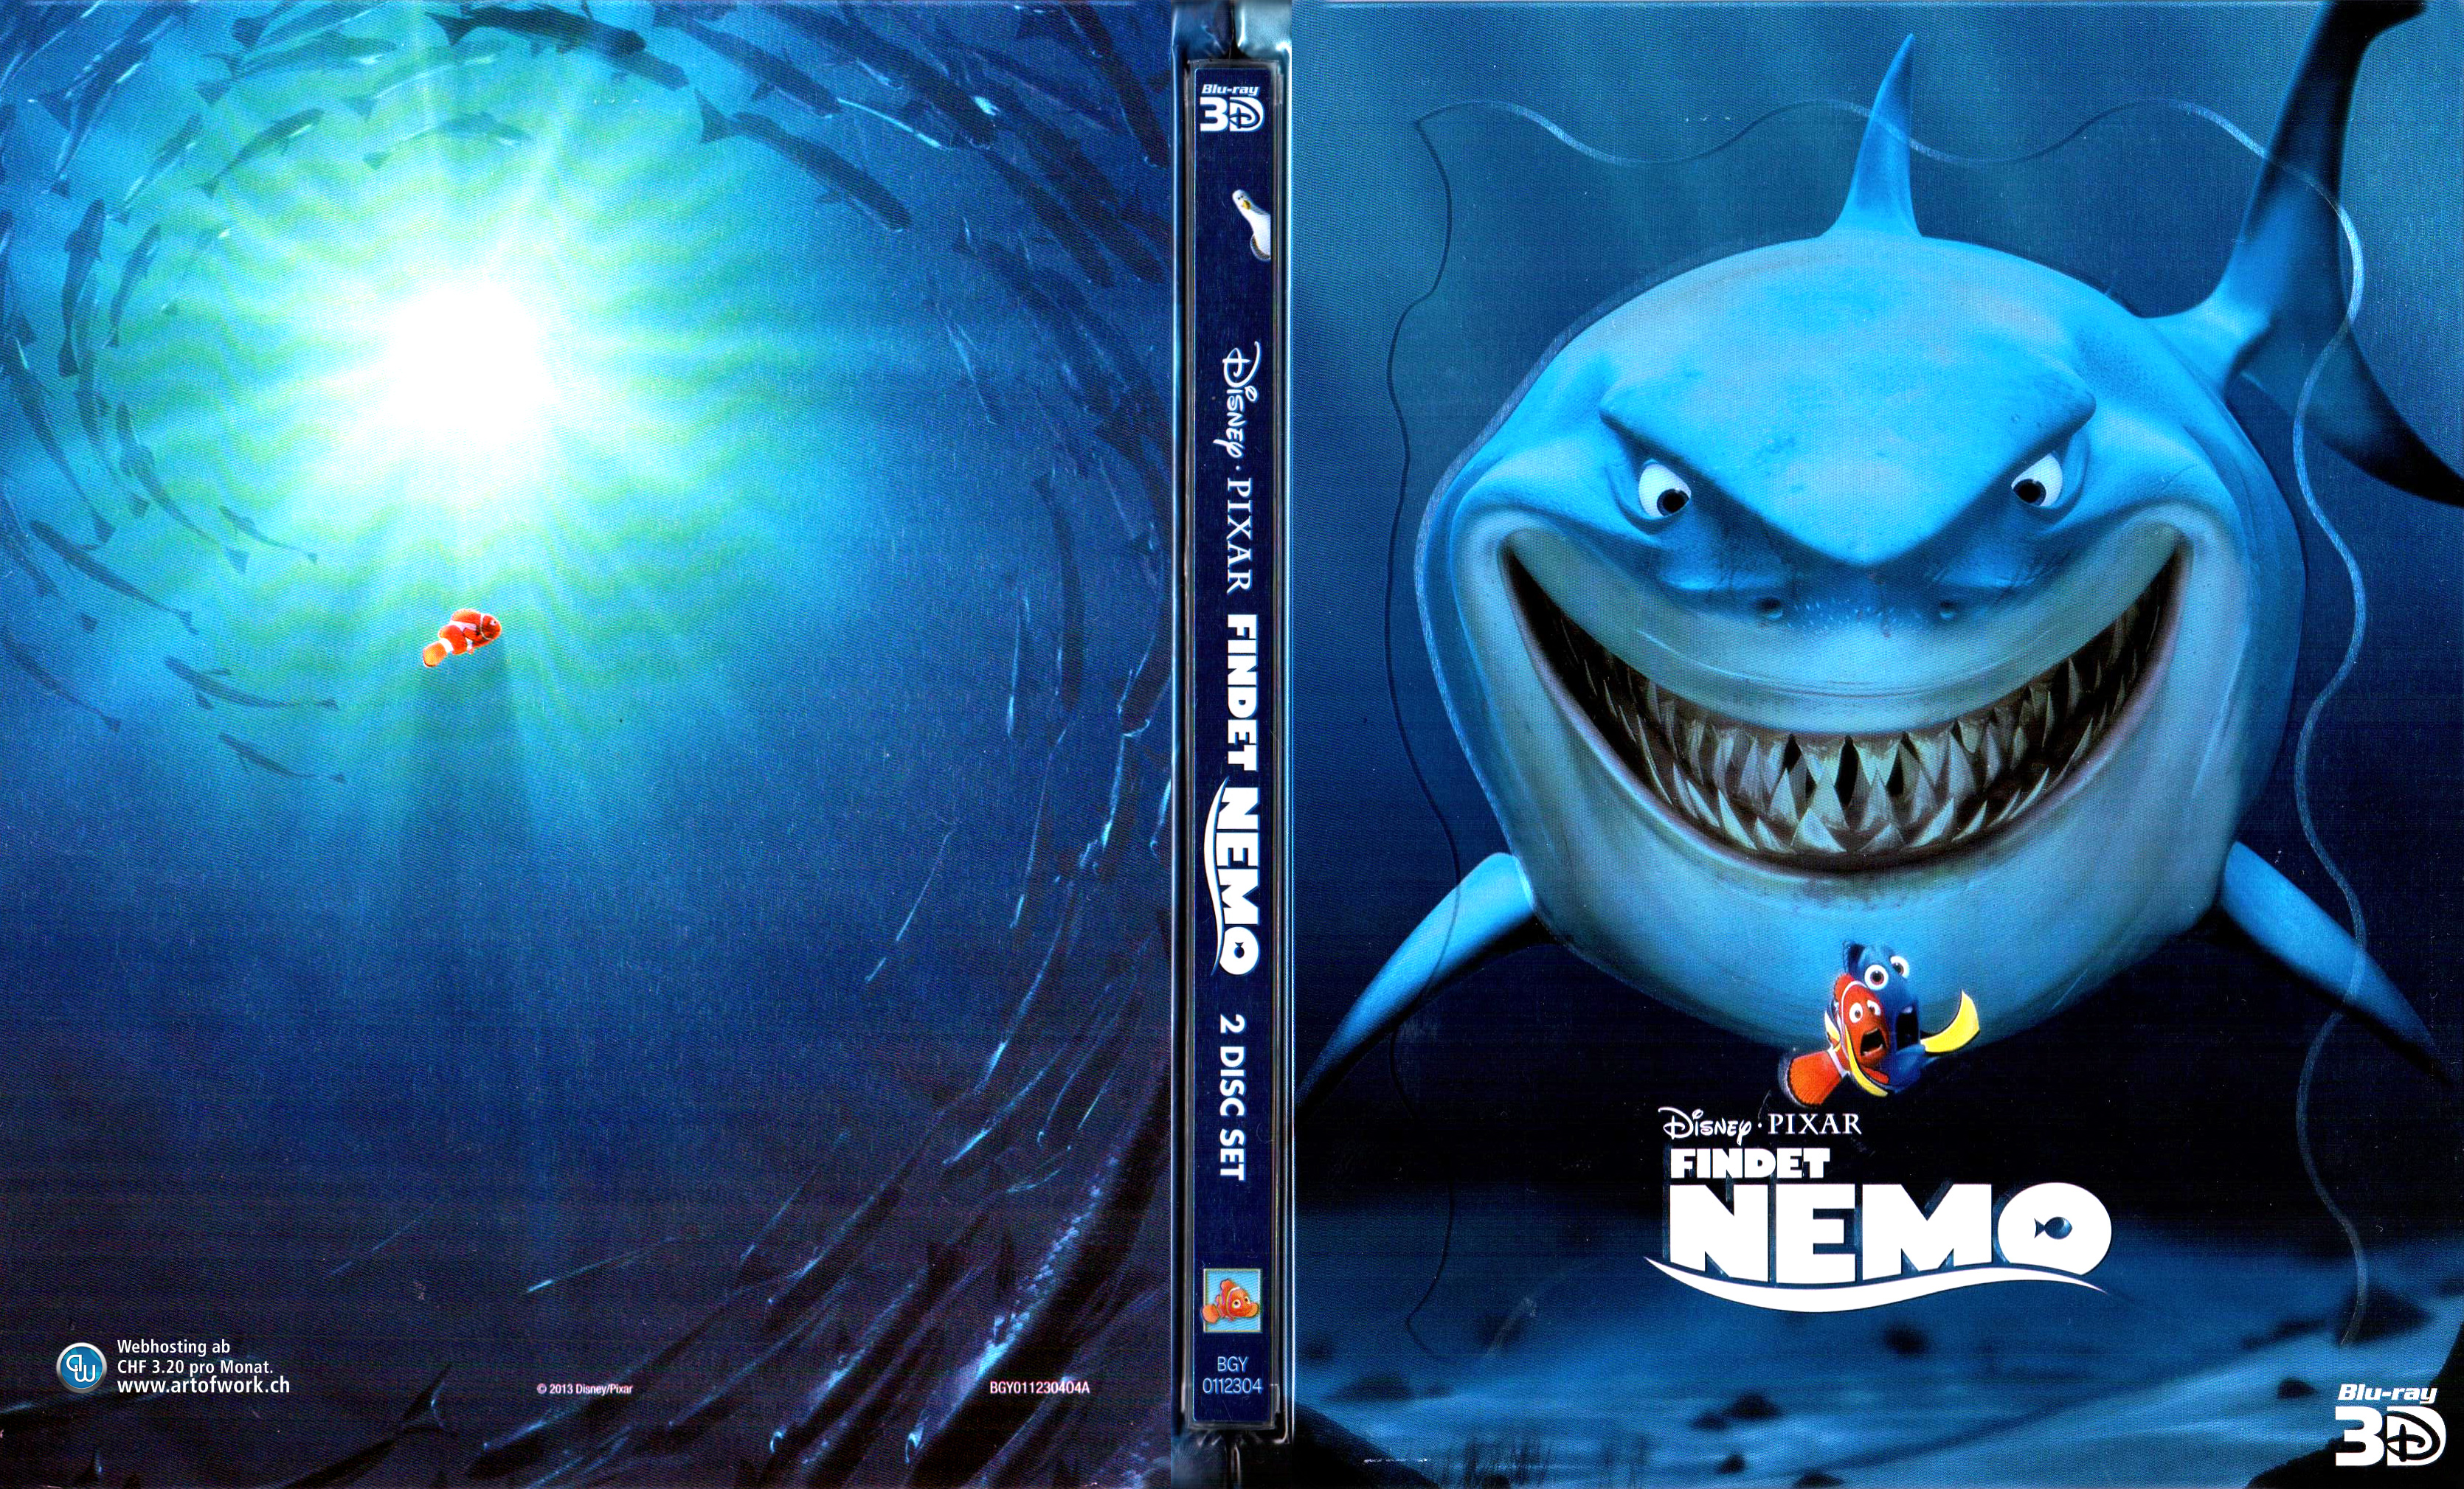 Findet Nemo 3D Blu ray Steelbook Cover Deutsch German Disney Cover deutsch Blu...